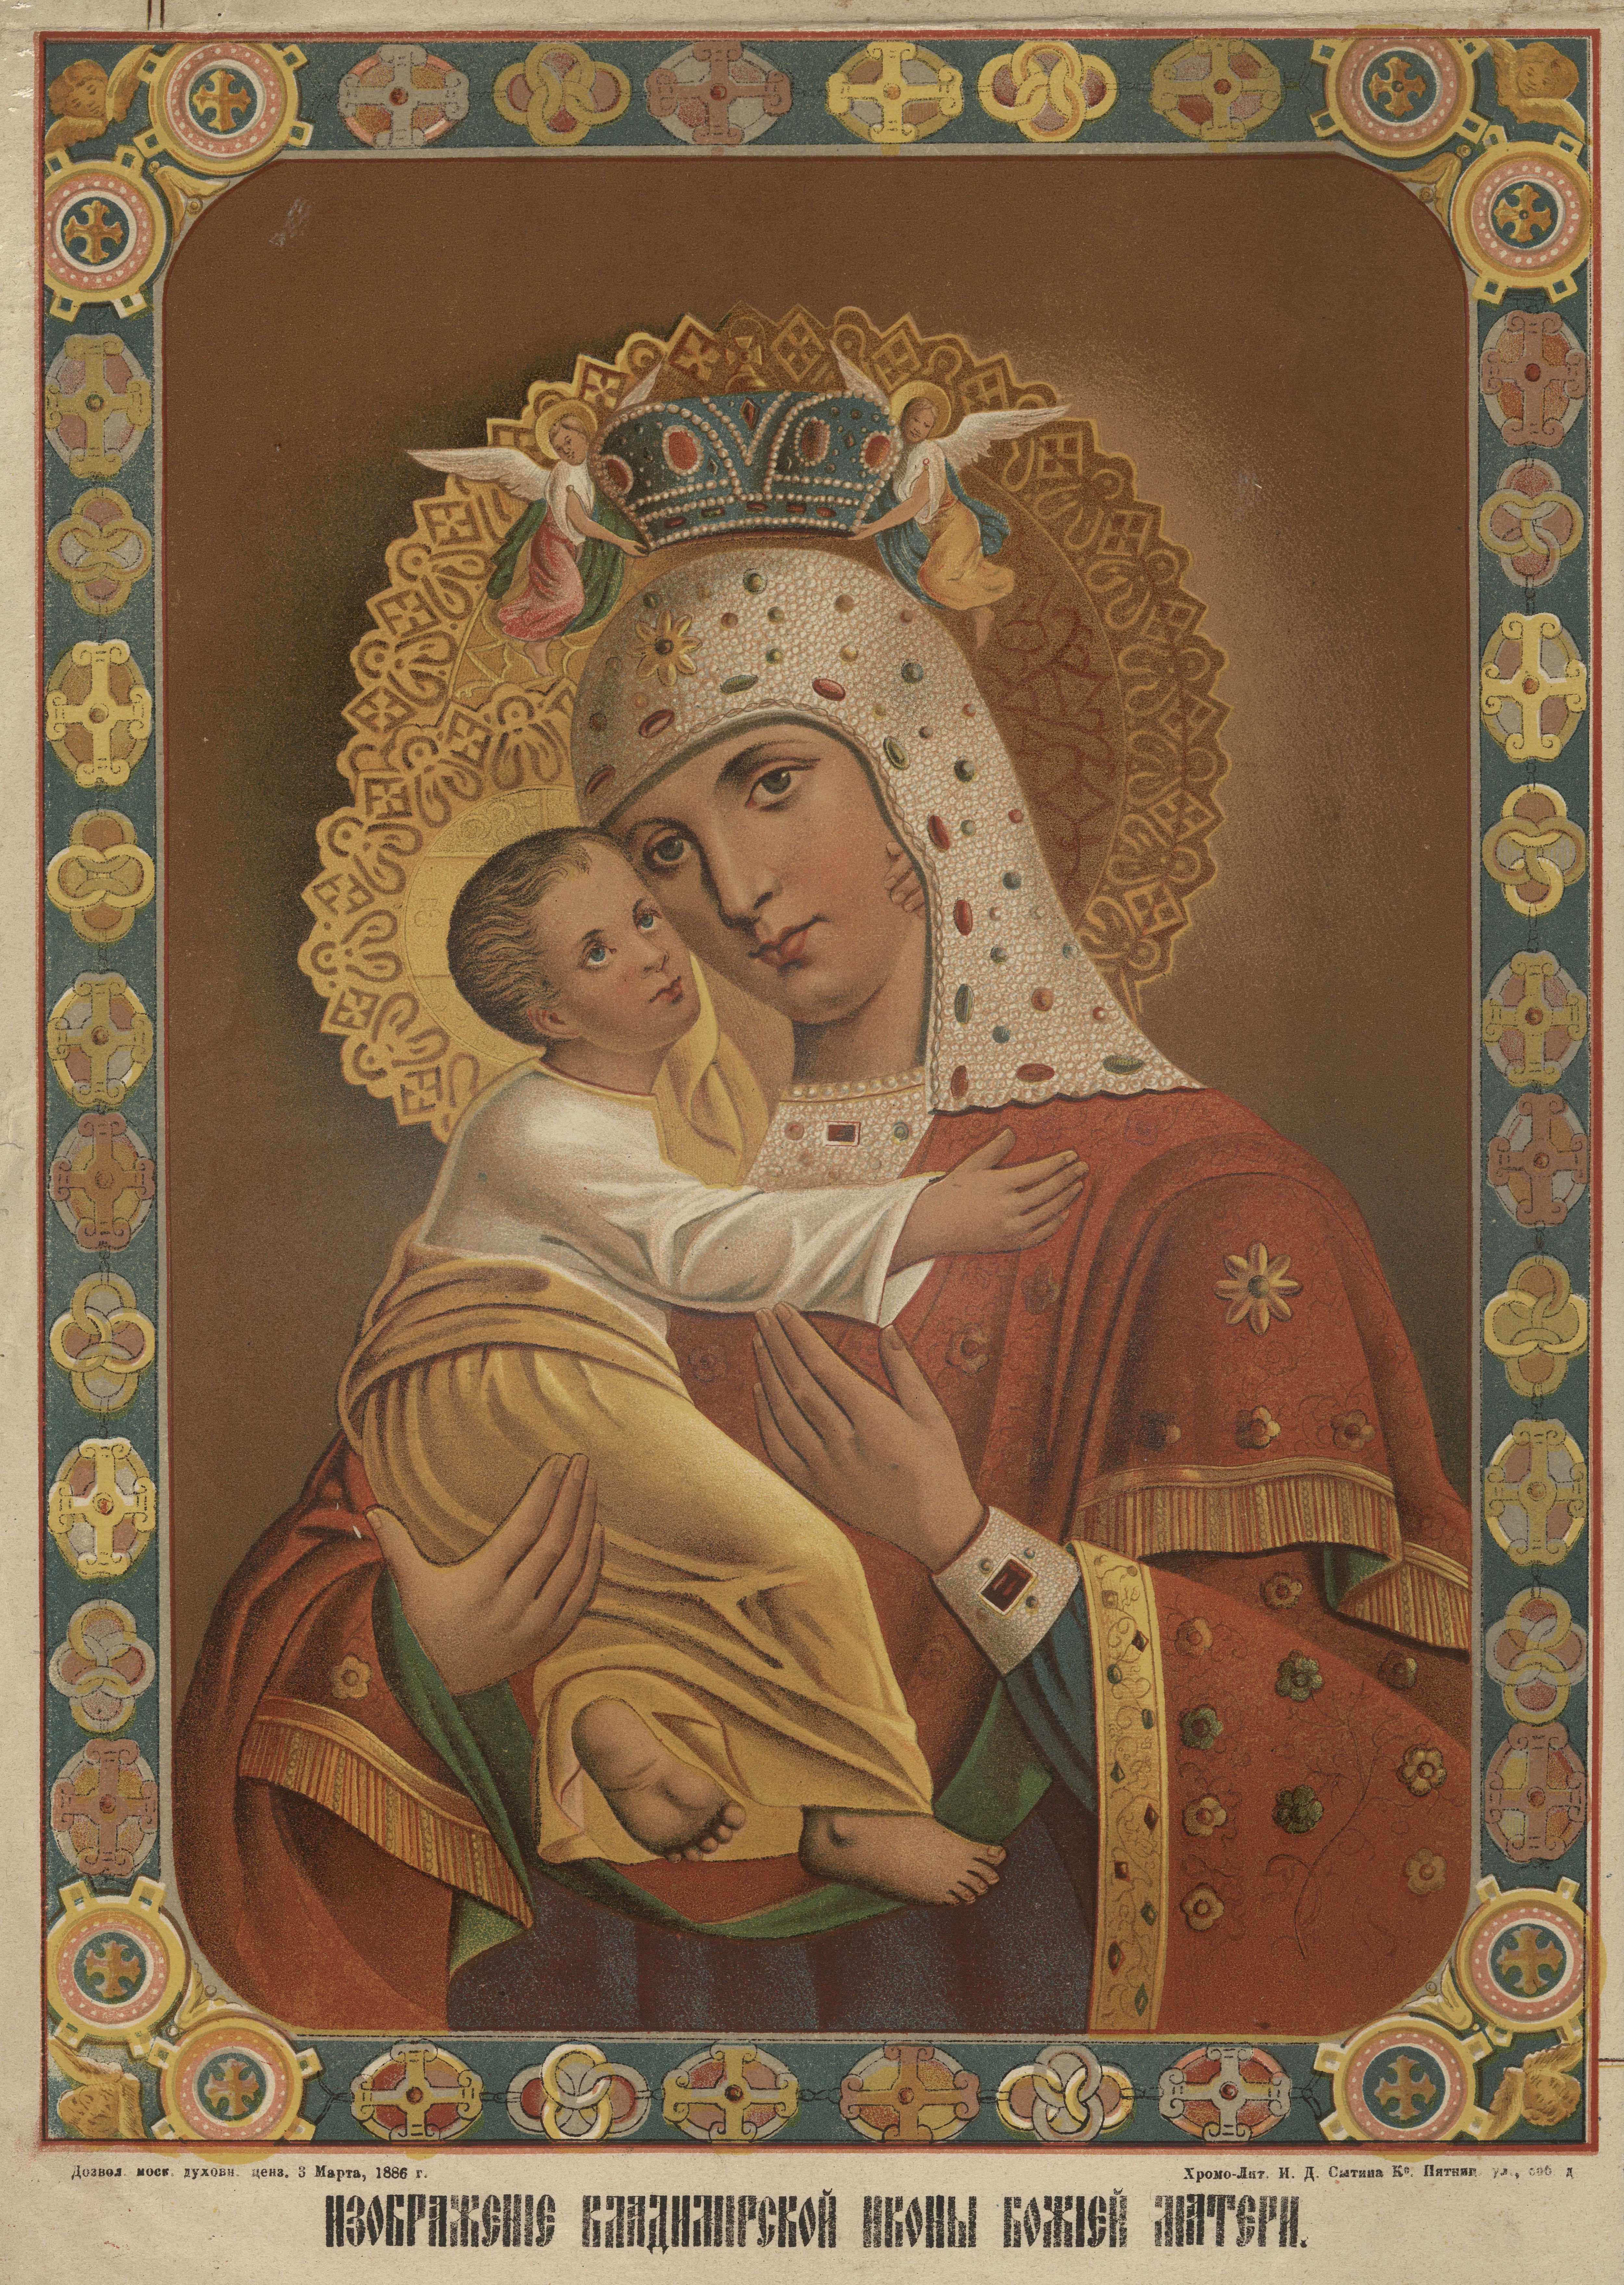 Изображение Владимирской иконы Божией Матери